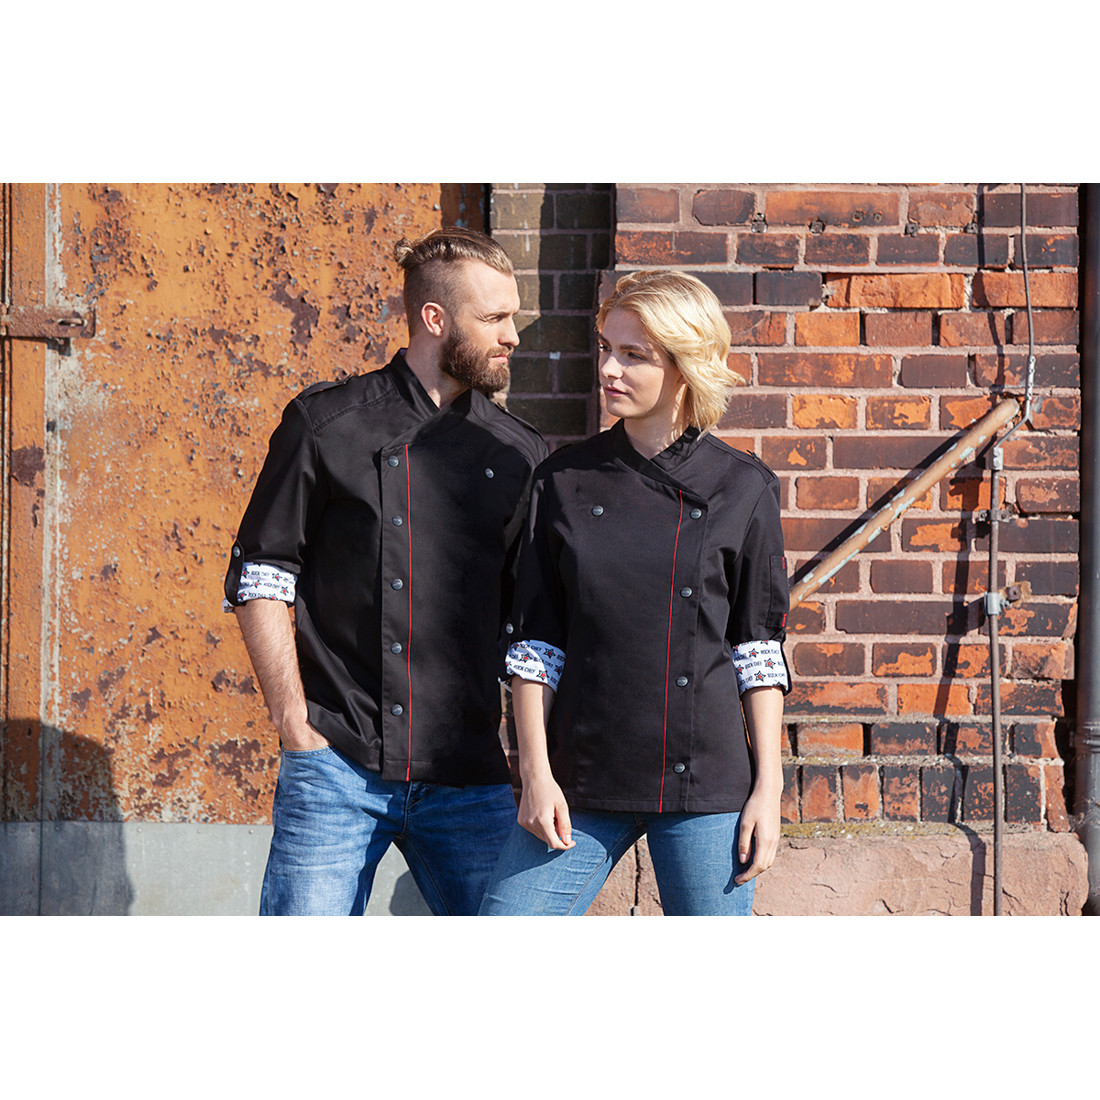 Chef Jacket ROCK CHEF® - Safetywear